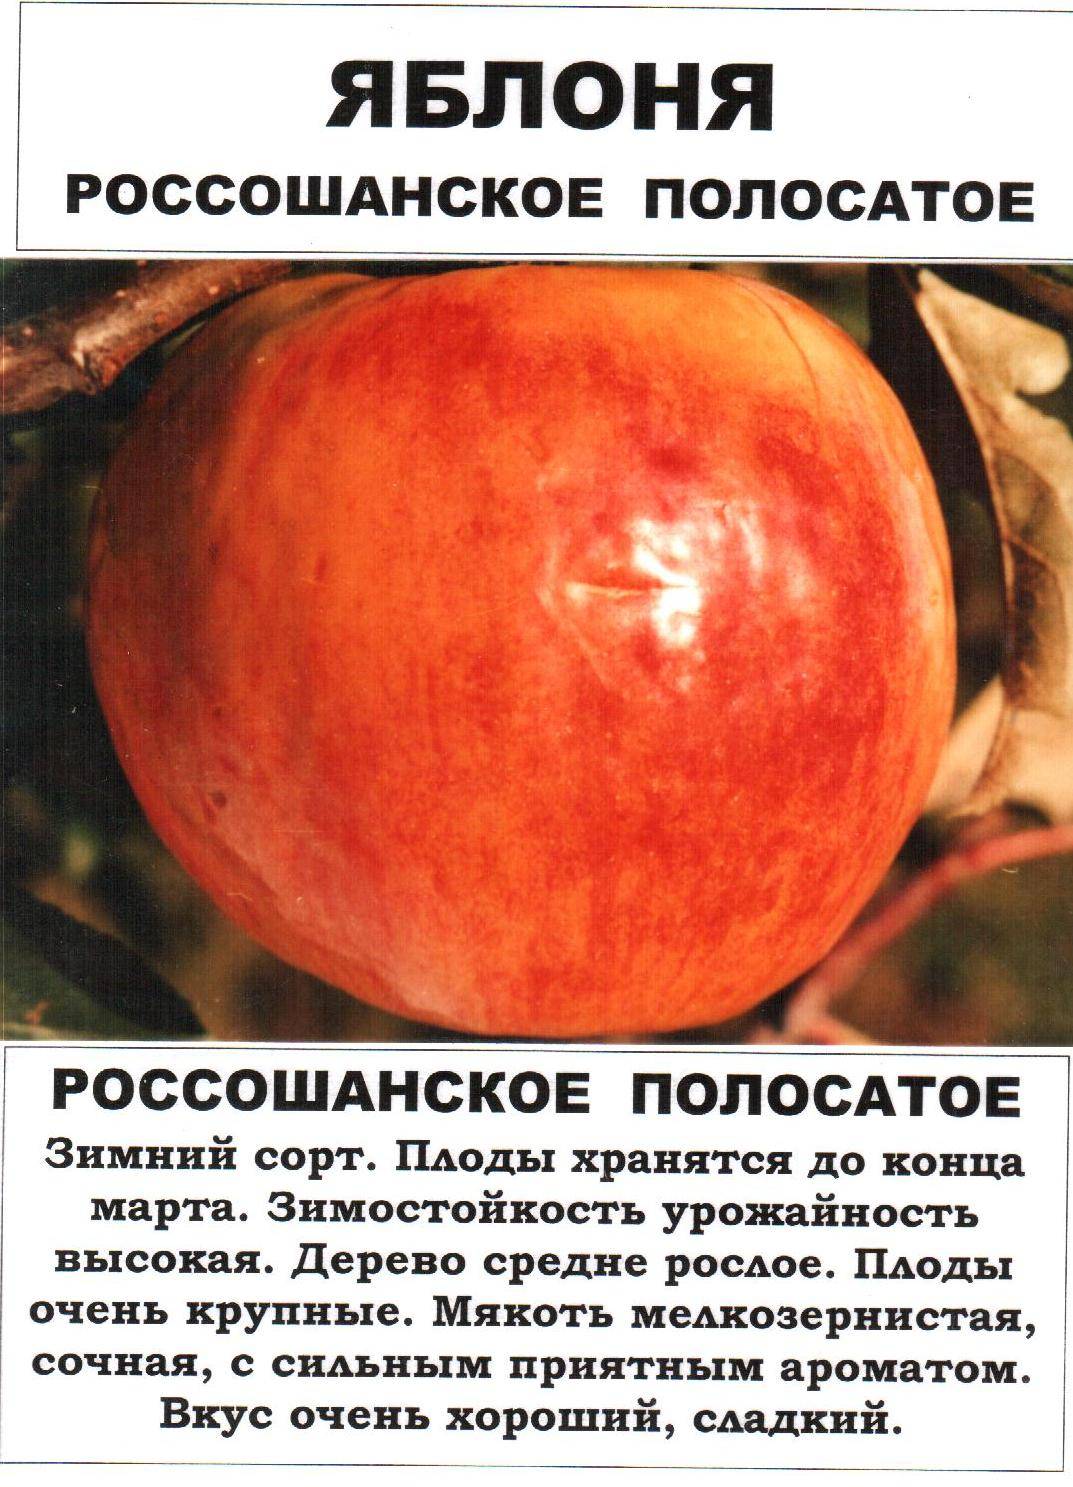 Сорт яблок коричное полосатое описание, фото, отзывы